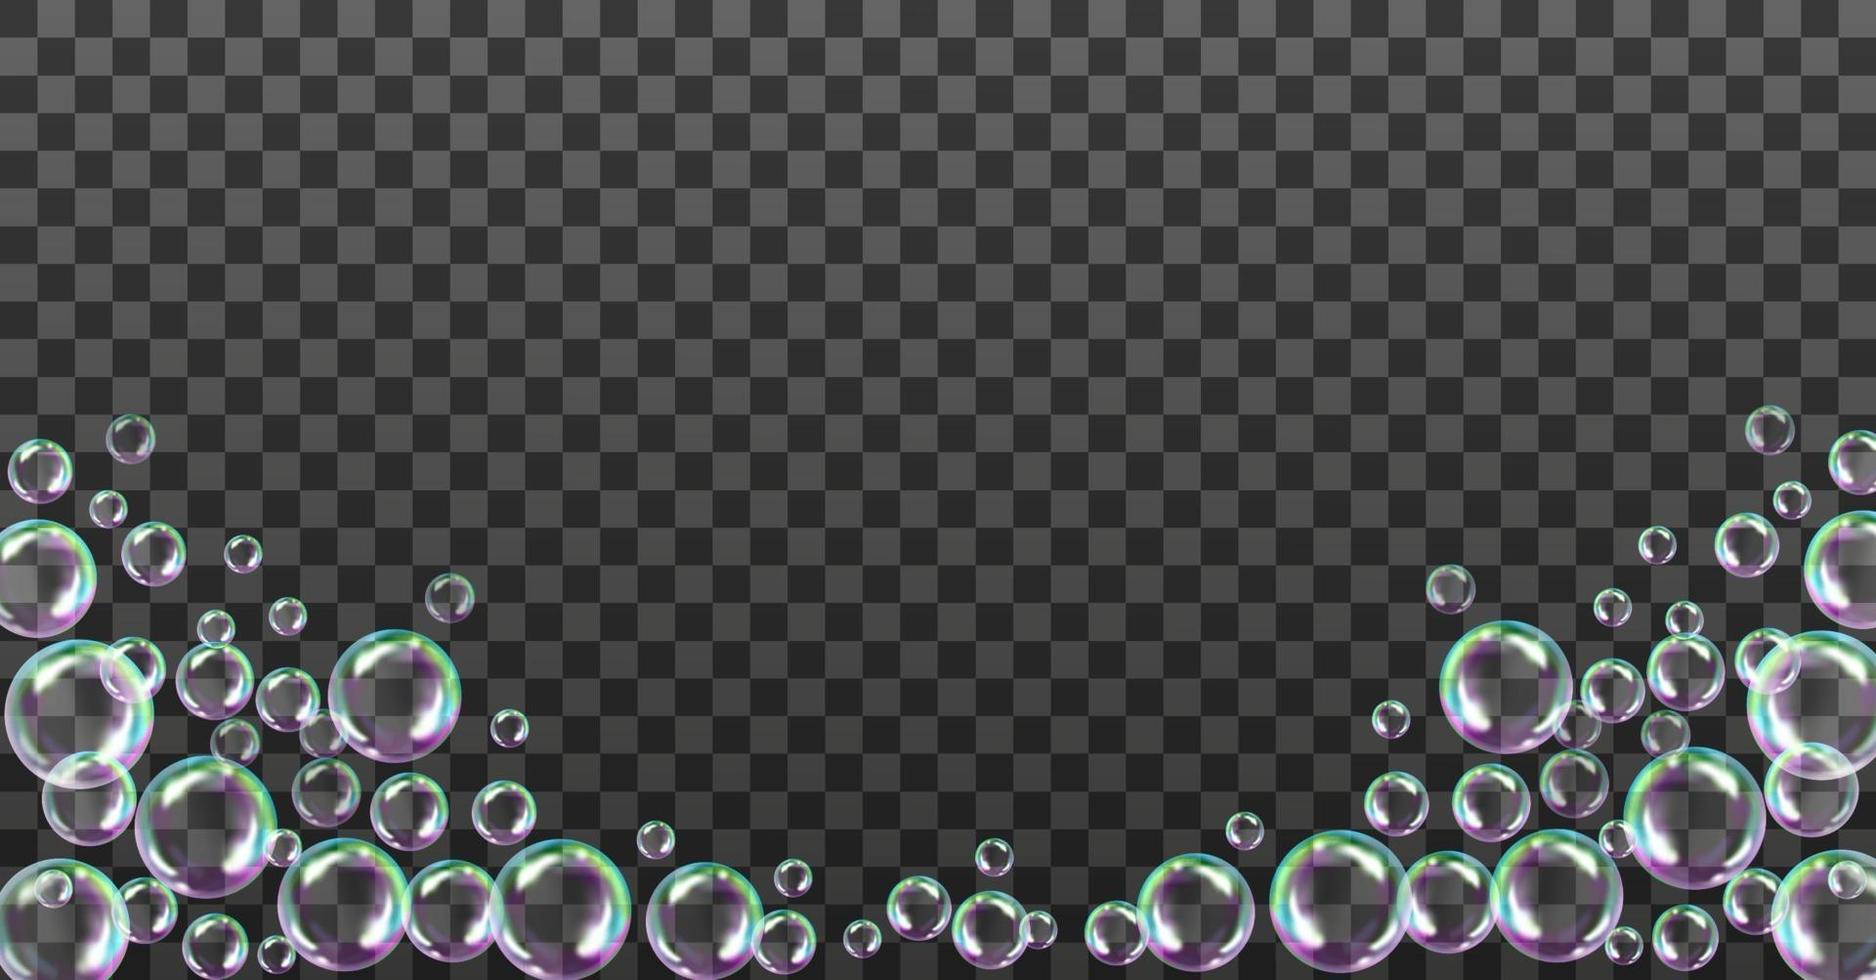 illustrazione vettoriale di bolle di sapone